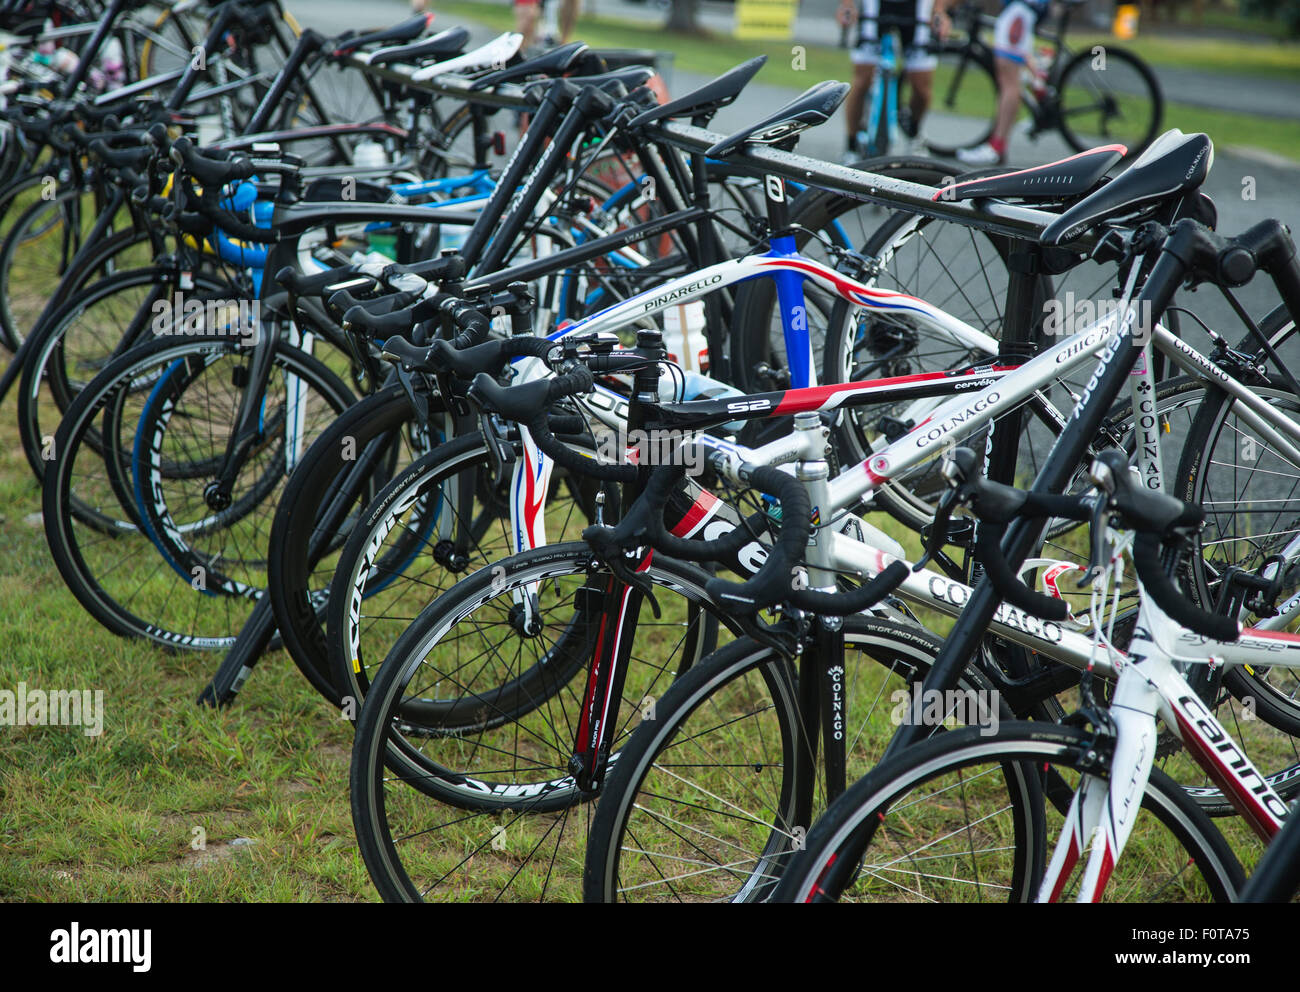 Fahrräder auf einem Rost an einem Radsport-event Stockfoto